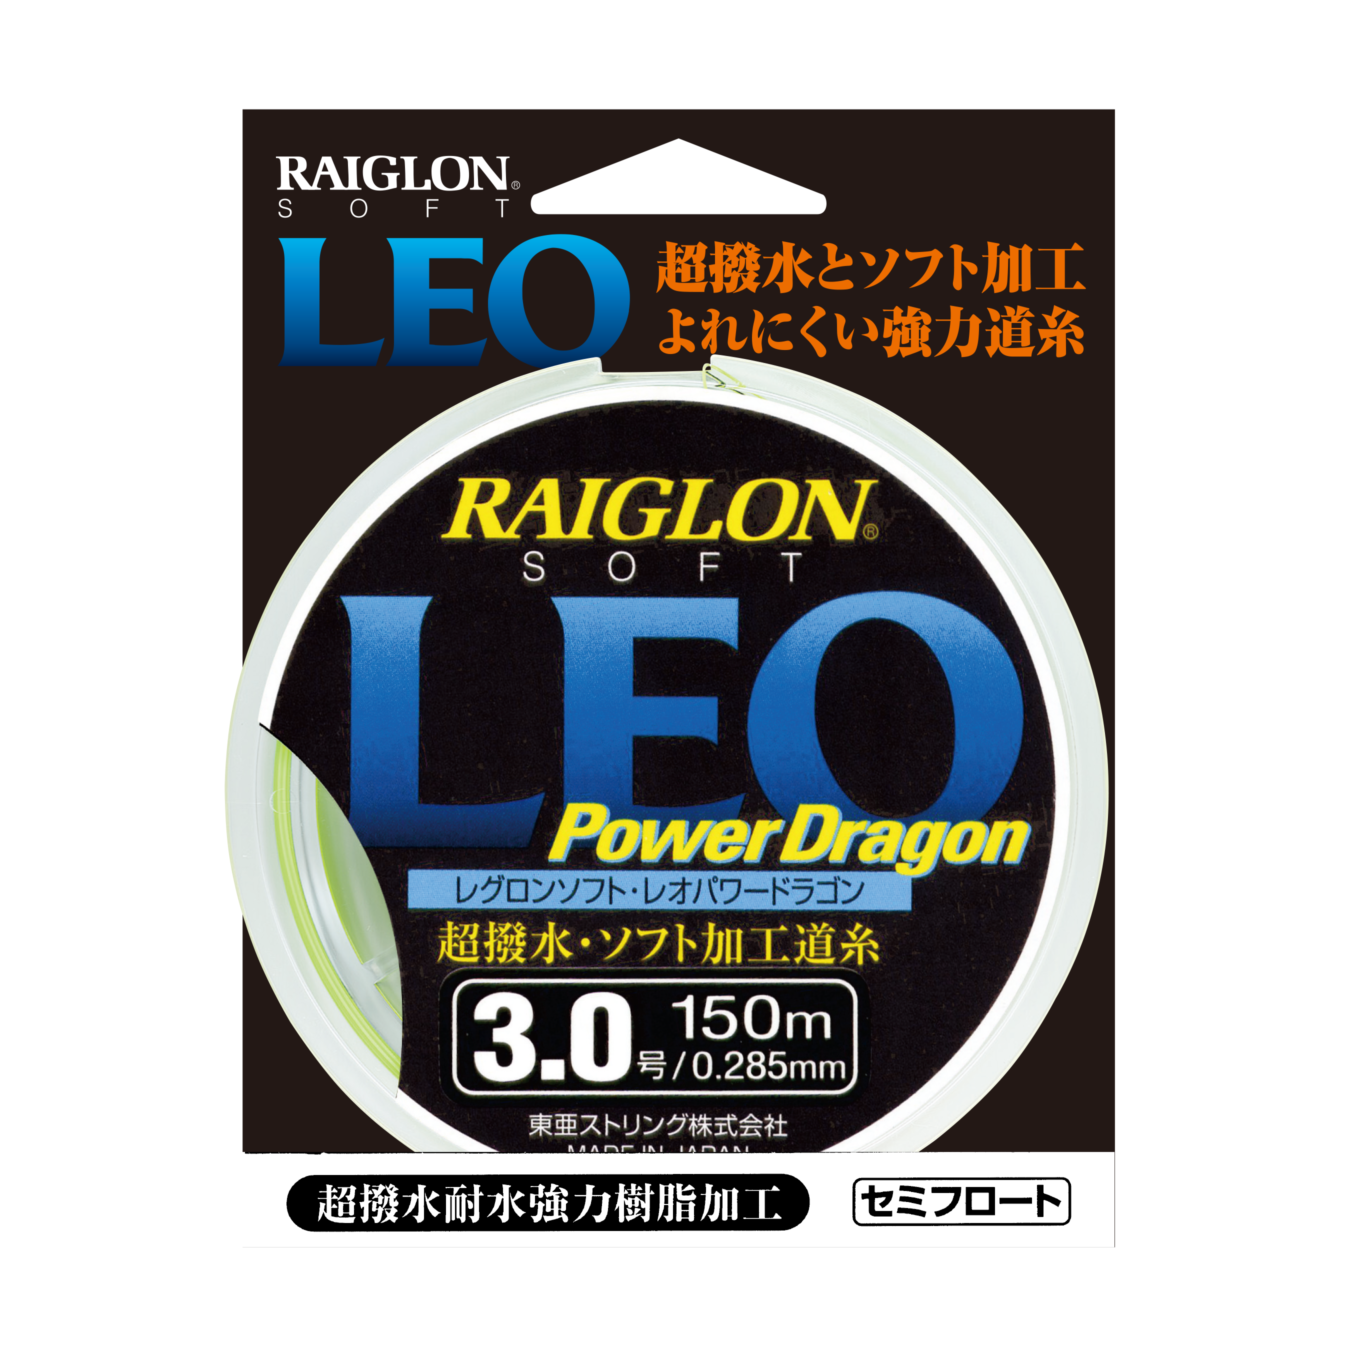 レグロンソフト・レオ・パワードラゴン【ナイロン / 平行巻】 | RAIGLON | レグロン